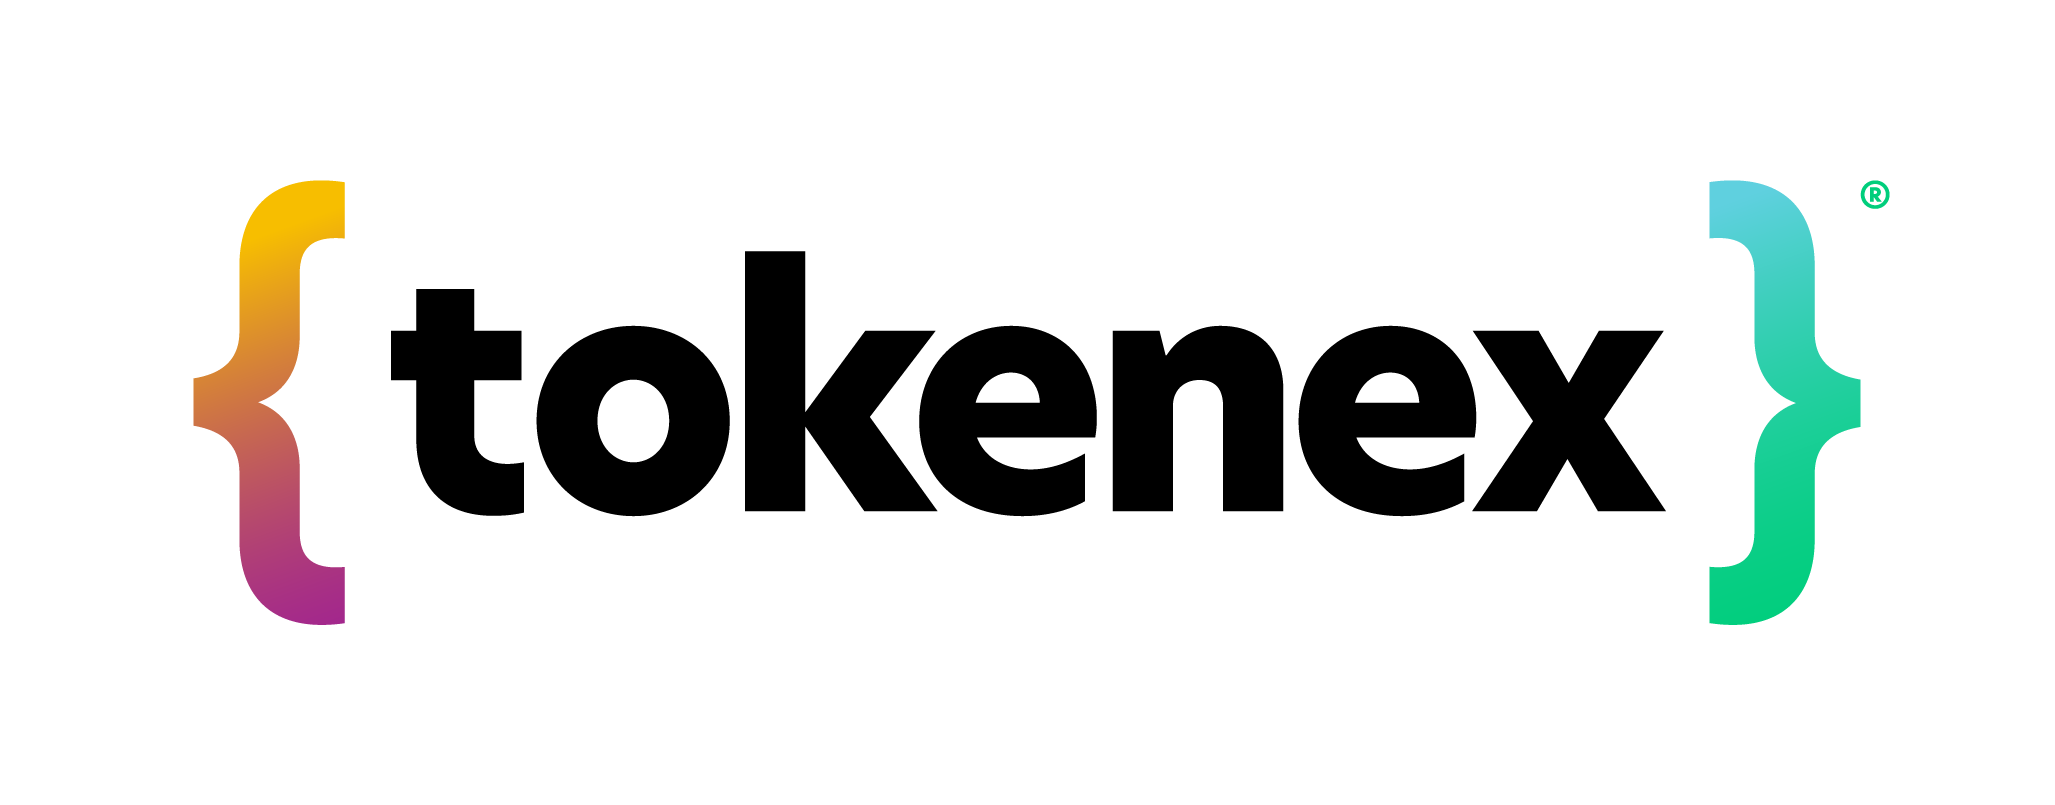 TokenEx Company Logo